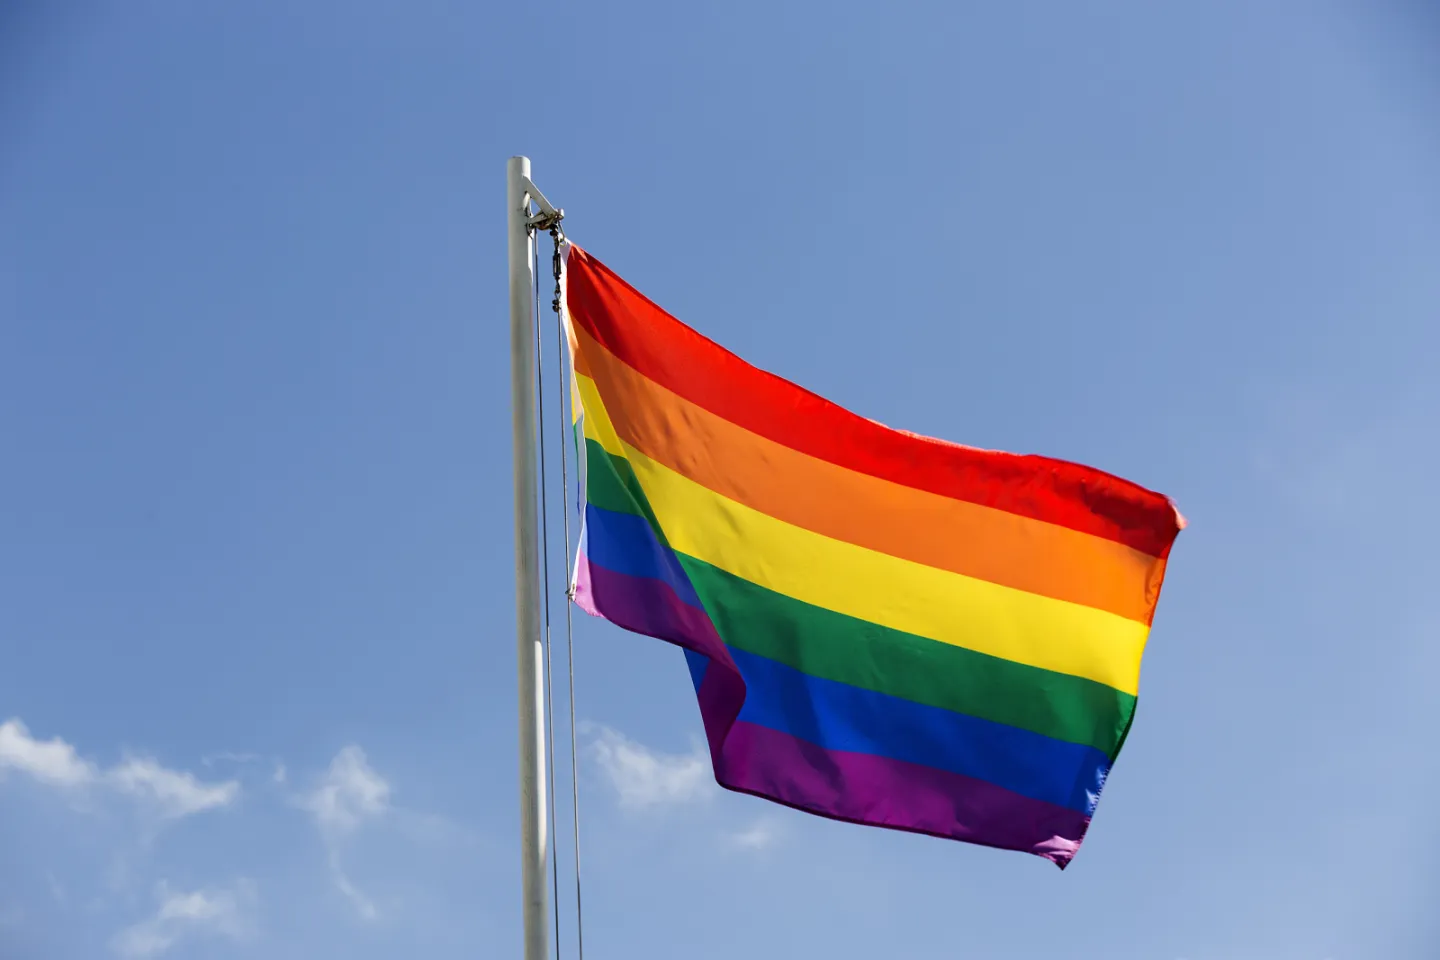 Gleichstellung für Lesben, Schwule, Bisexuelle, Trans*, Inter* und Queere Menschen (LSBTIQ*)